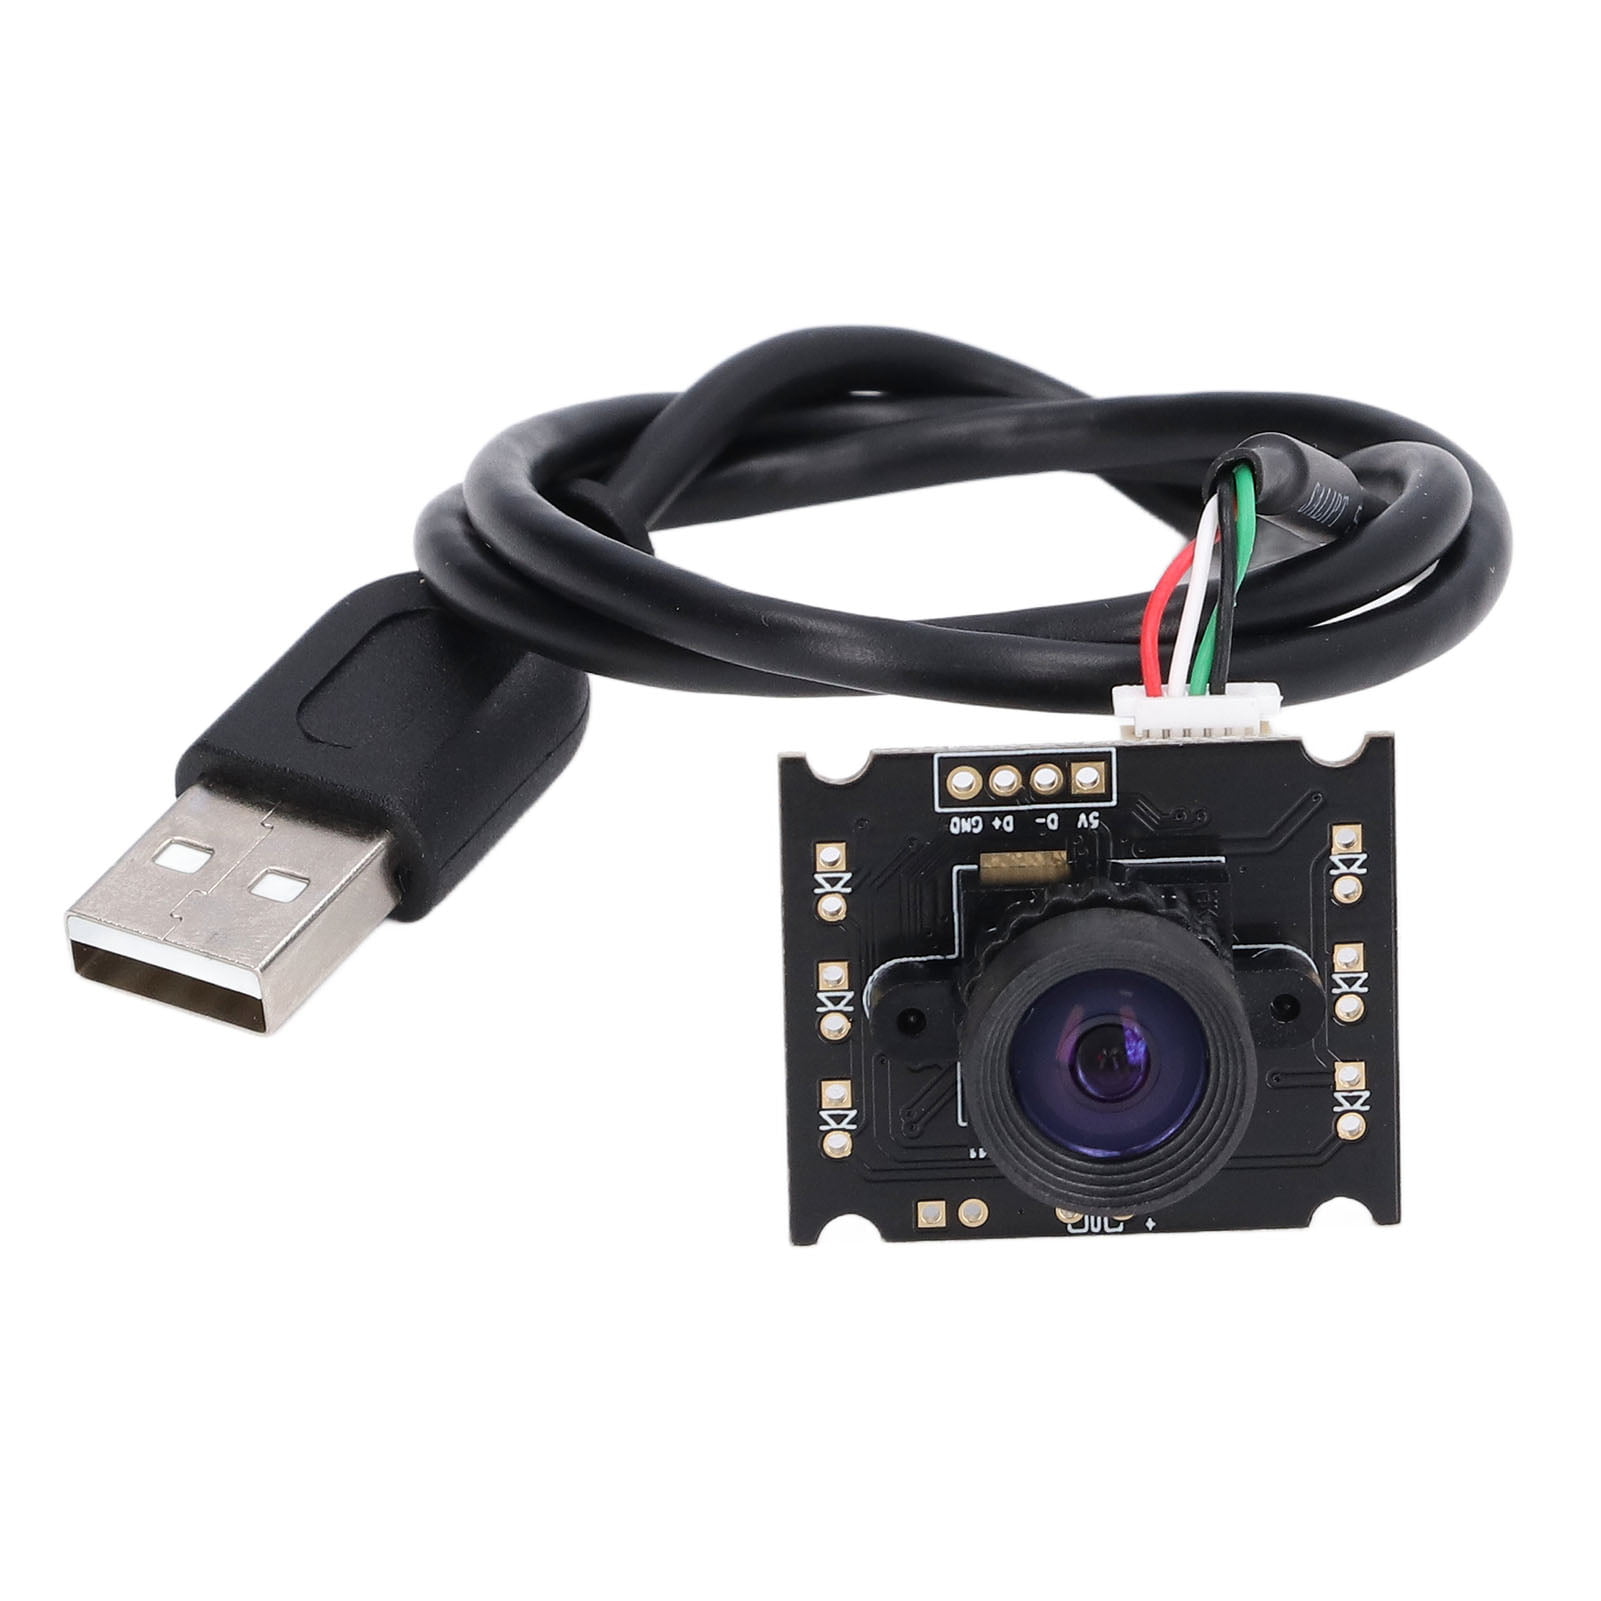 Cameras Board, 0.3MP Camera Module GC0308 Chip USB 2.0 Driver Free For - Walmart.com